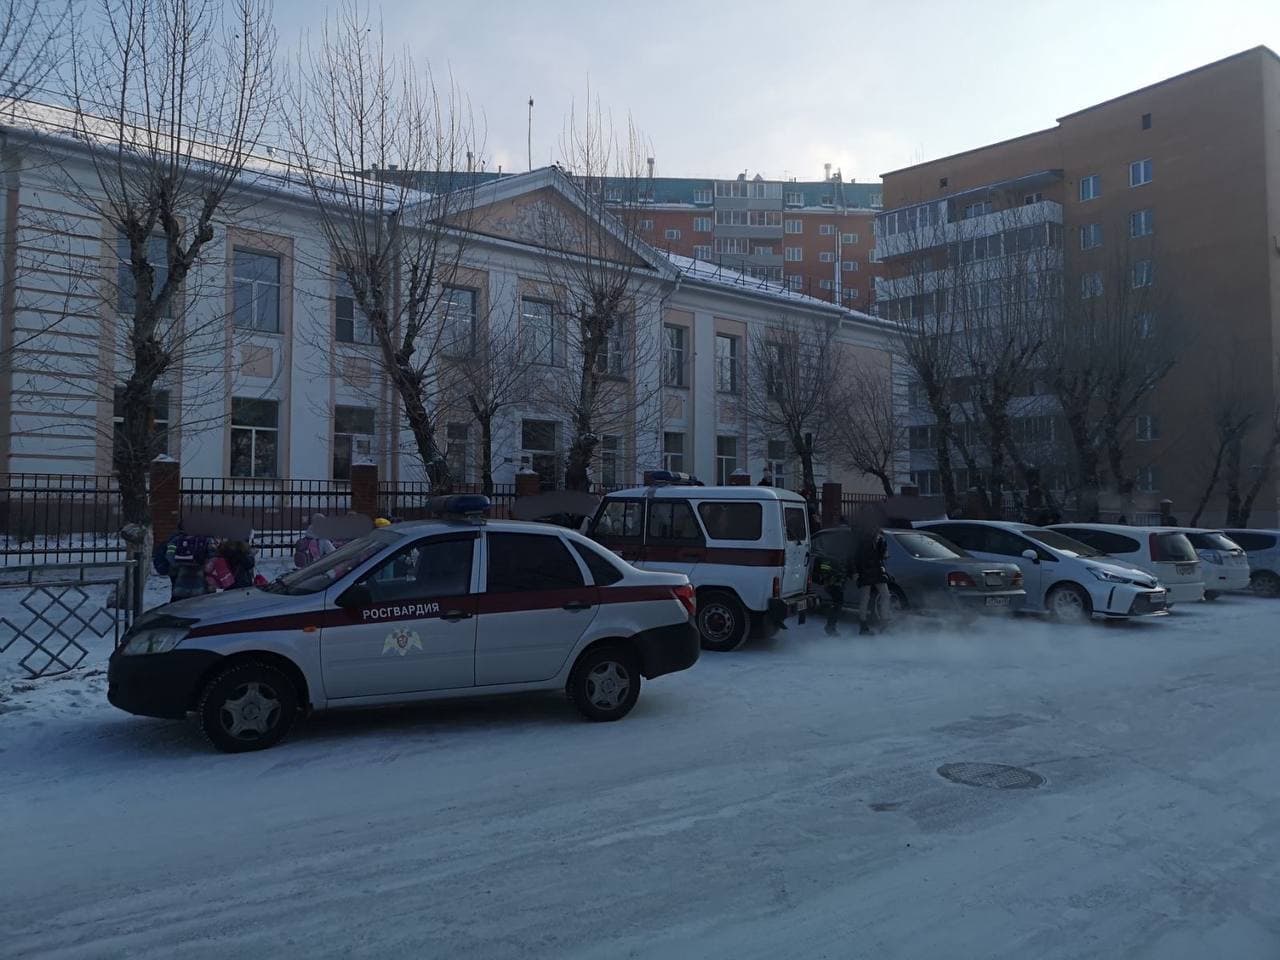 Фото В Улан-Удэ проверяют новость о минировании школ (ОБНОВЛЕНО)